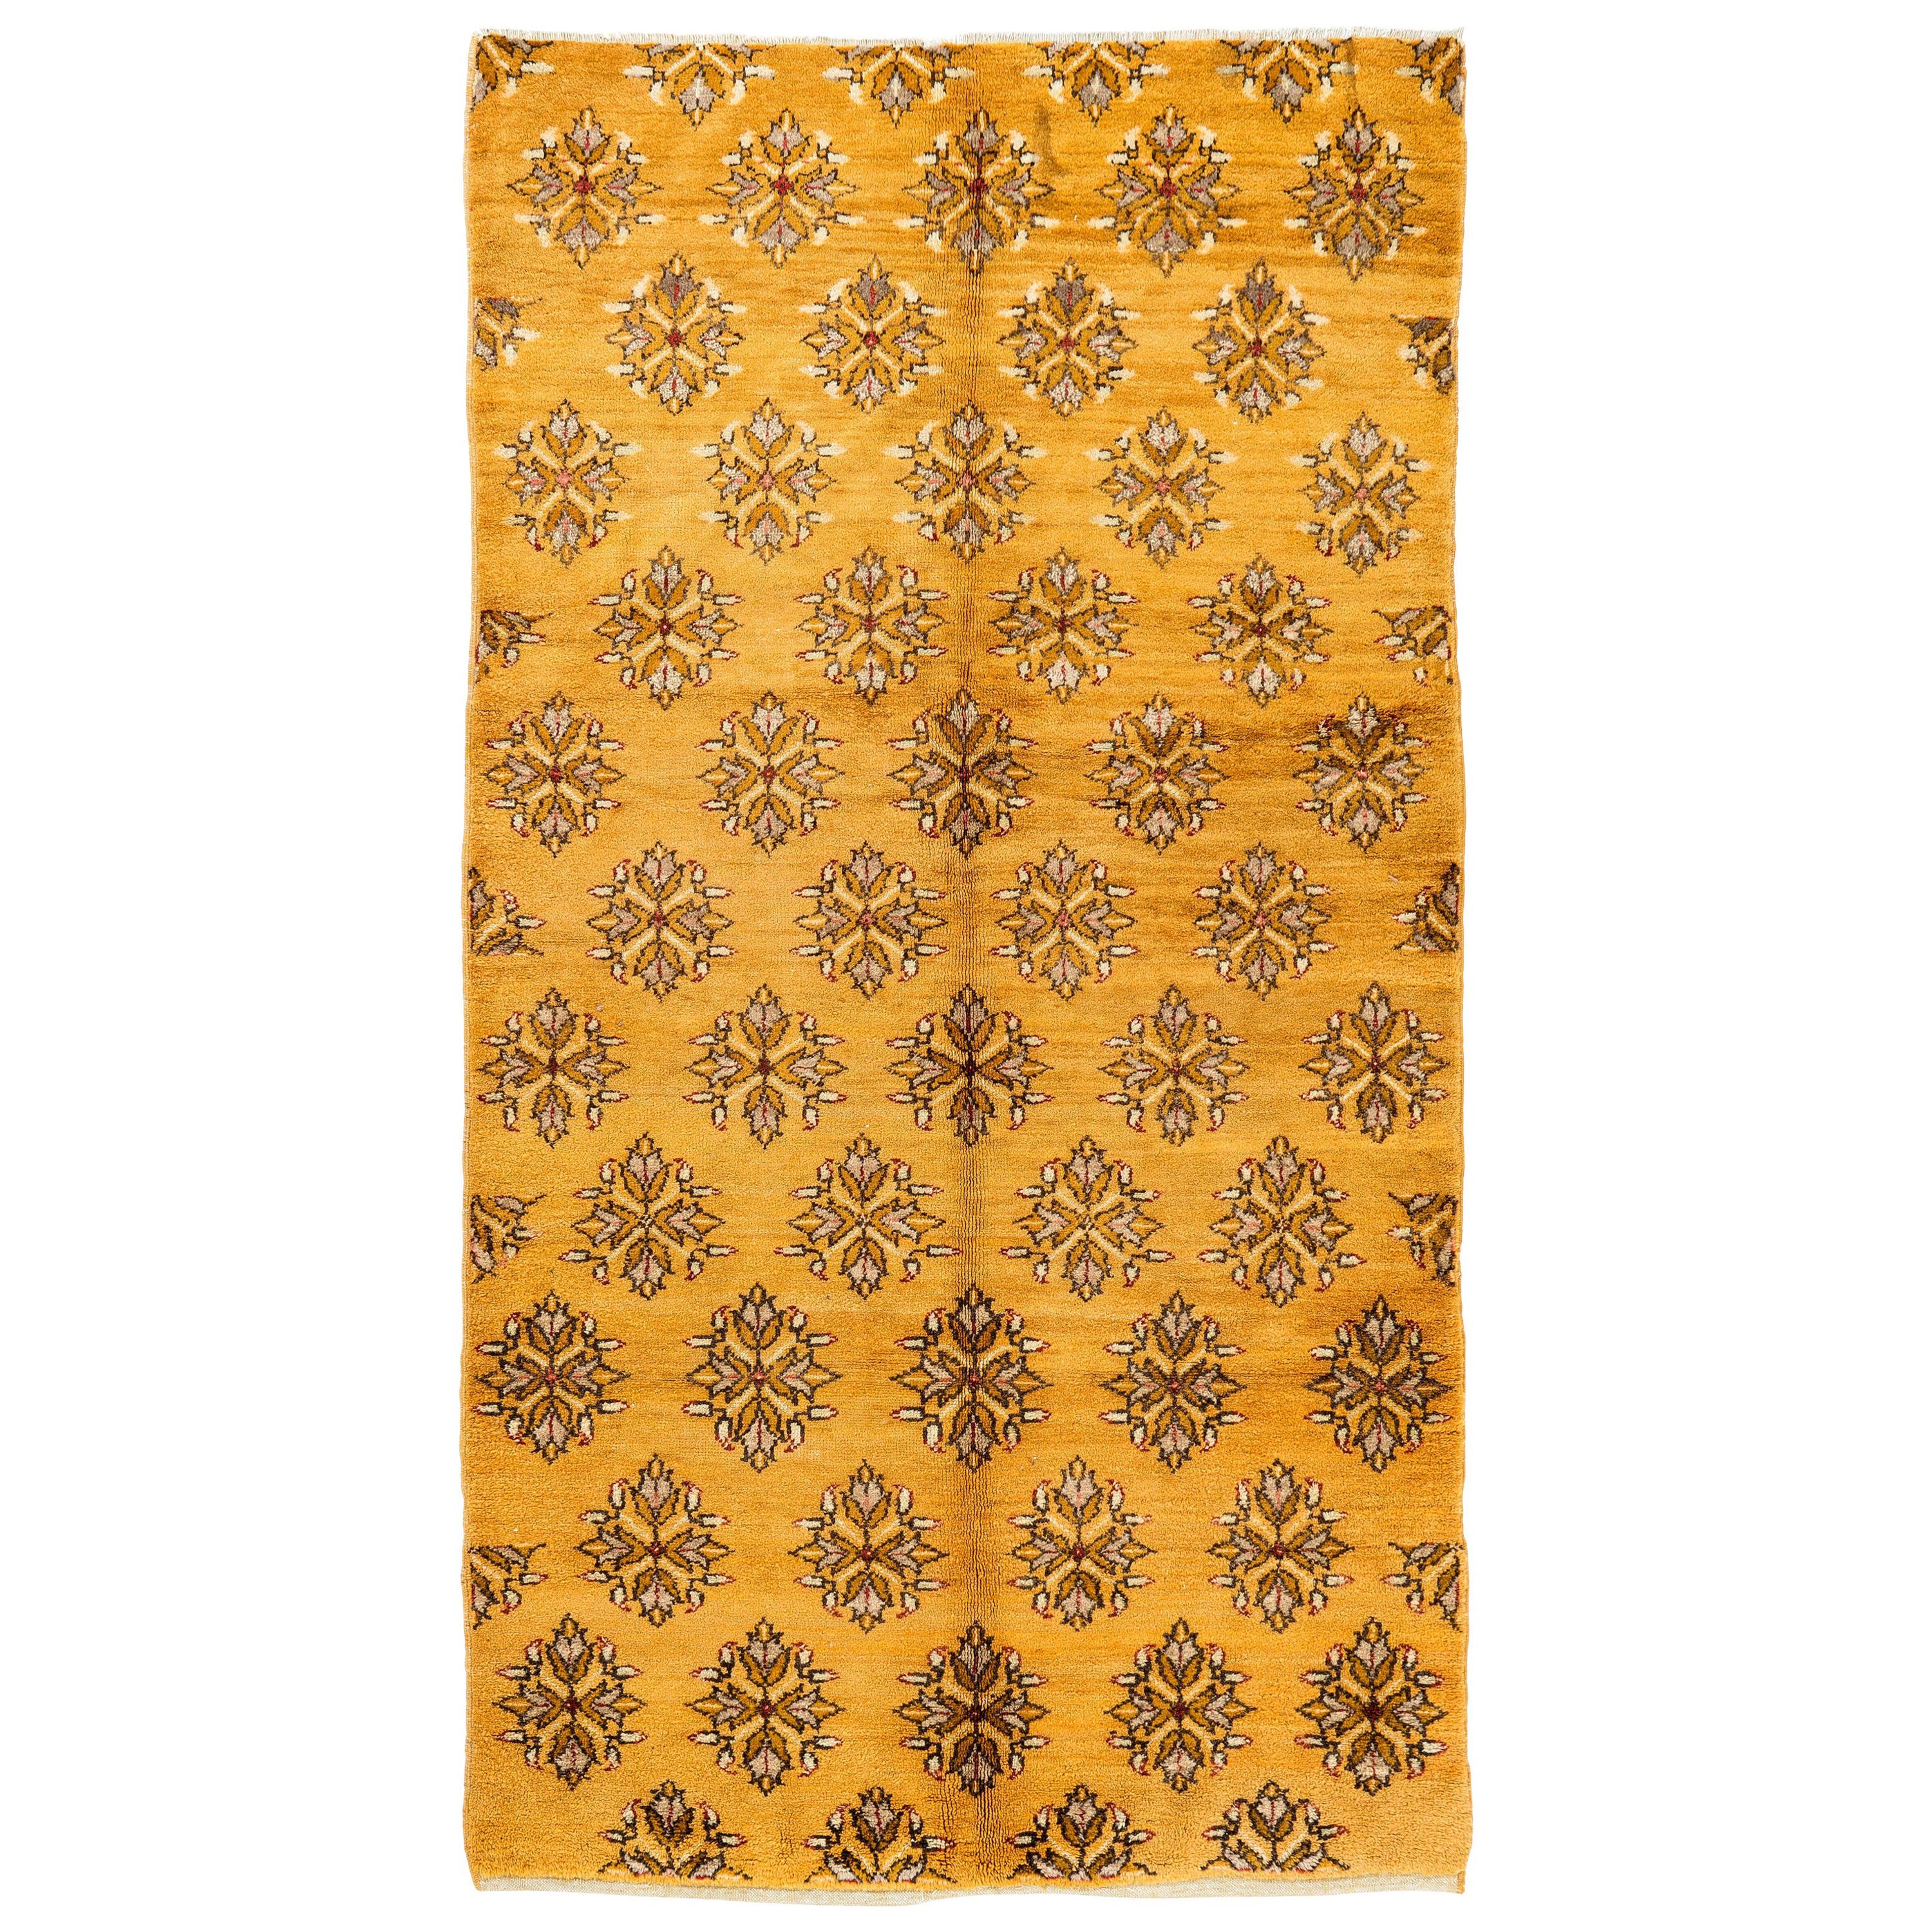 5x9.2 Ft Vintage Konya Rug in Orange and Dark Yellow Color, 100% Soft Wool Pile